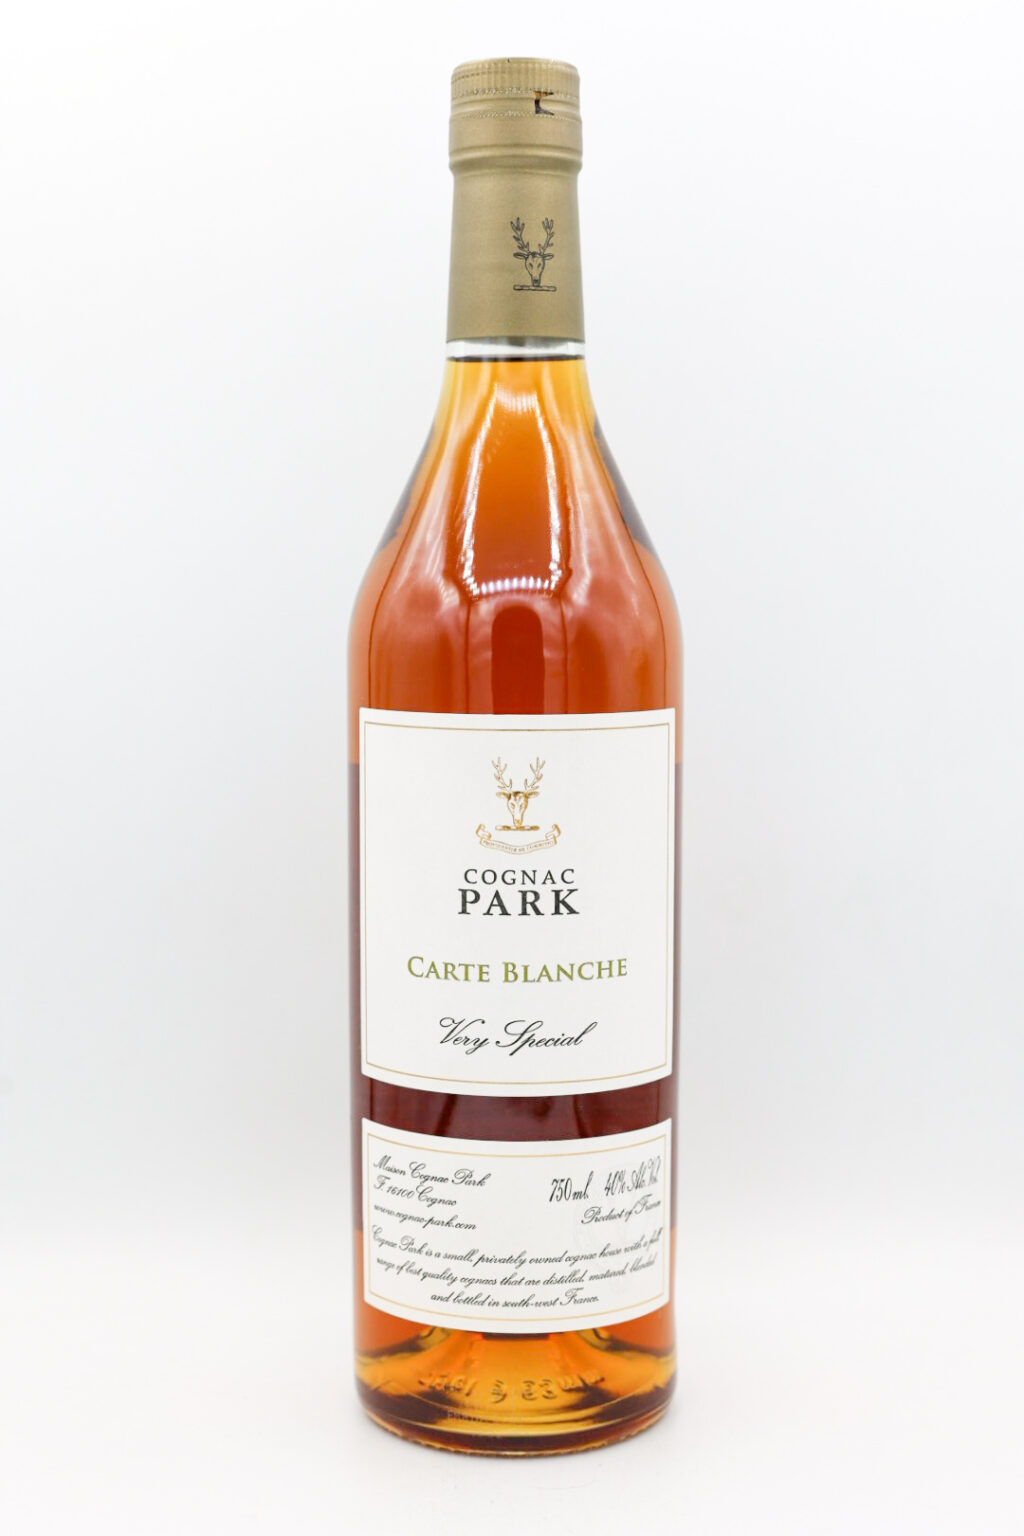 Cognac Park “Carte Blanche” VS